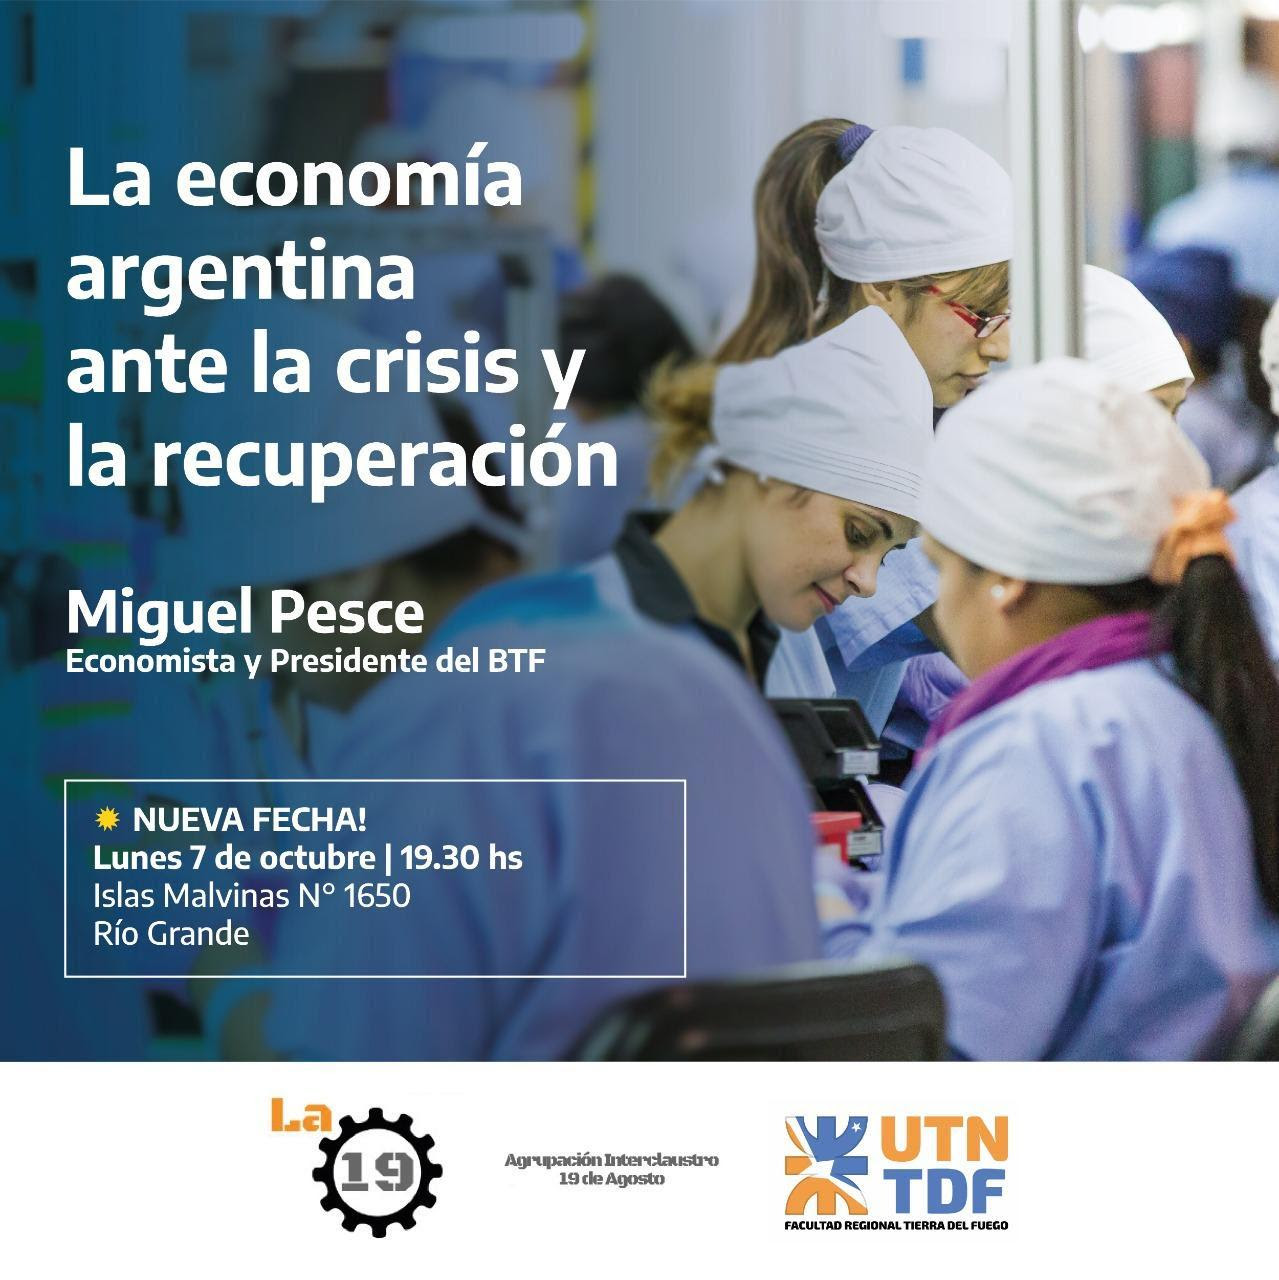 “La economía Argentina ante la crisis y la recuperación”